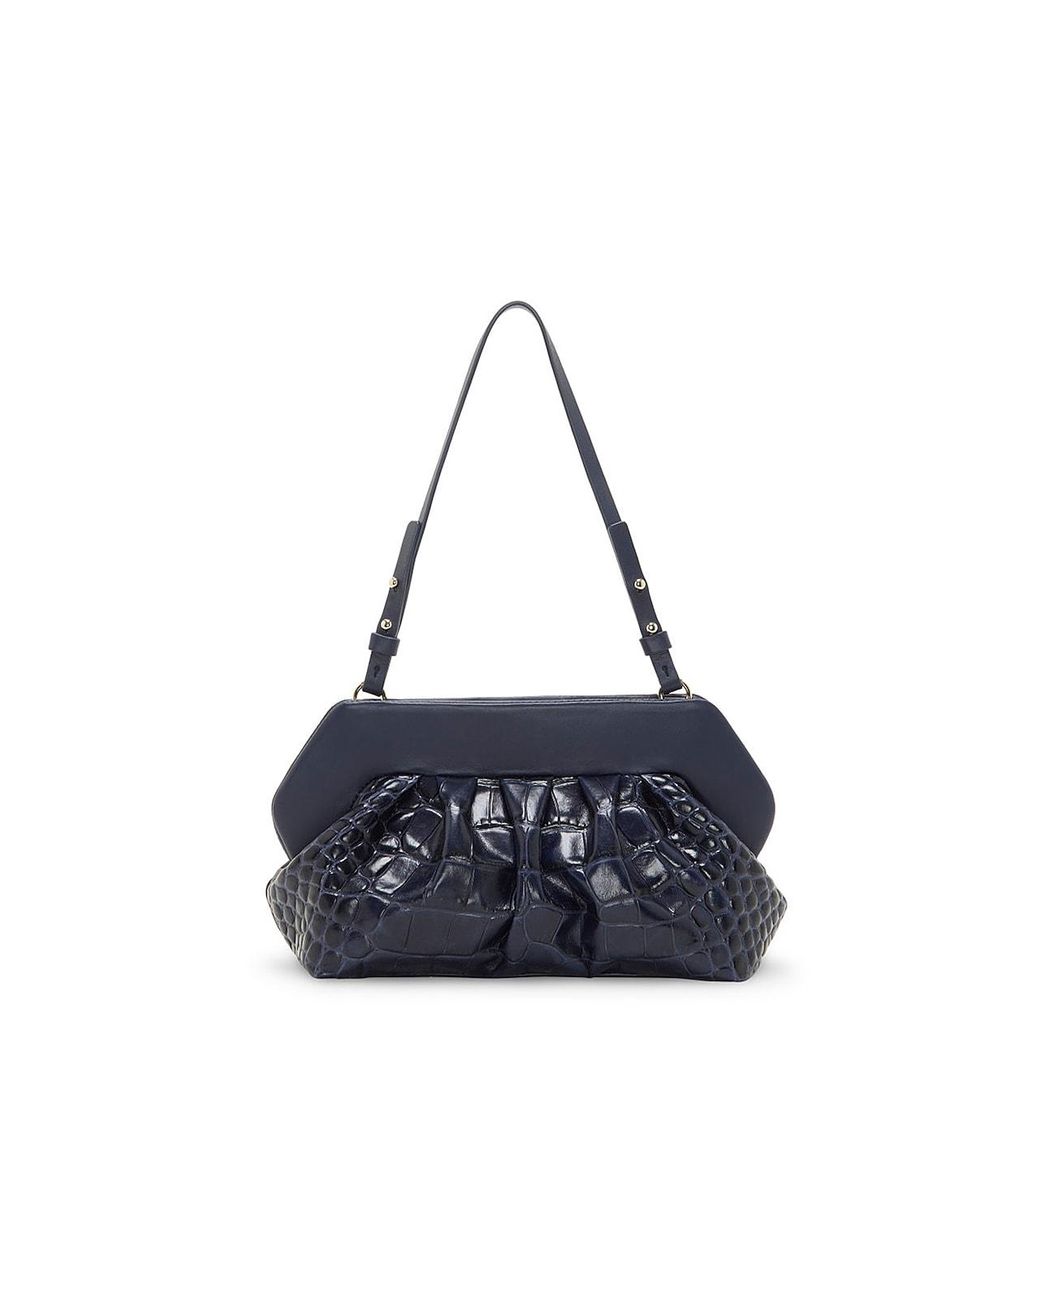 Vince Camuto Amari Leather Shoulder Bag in Navy Croc Print (Black) | Lyst